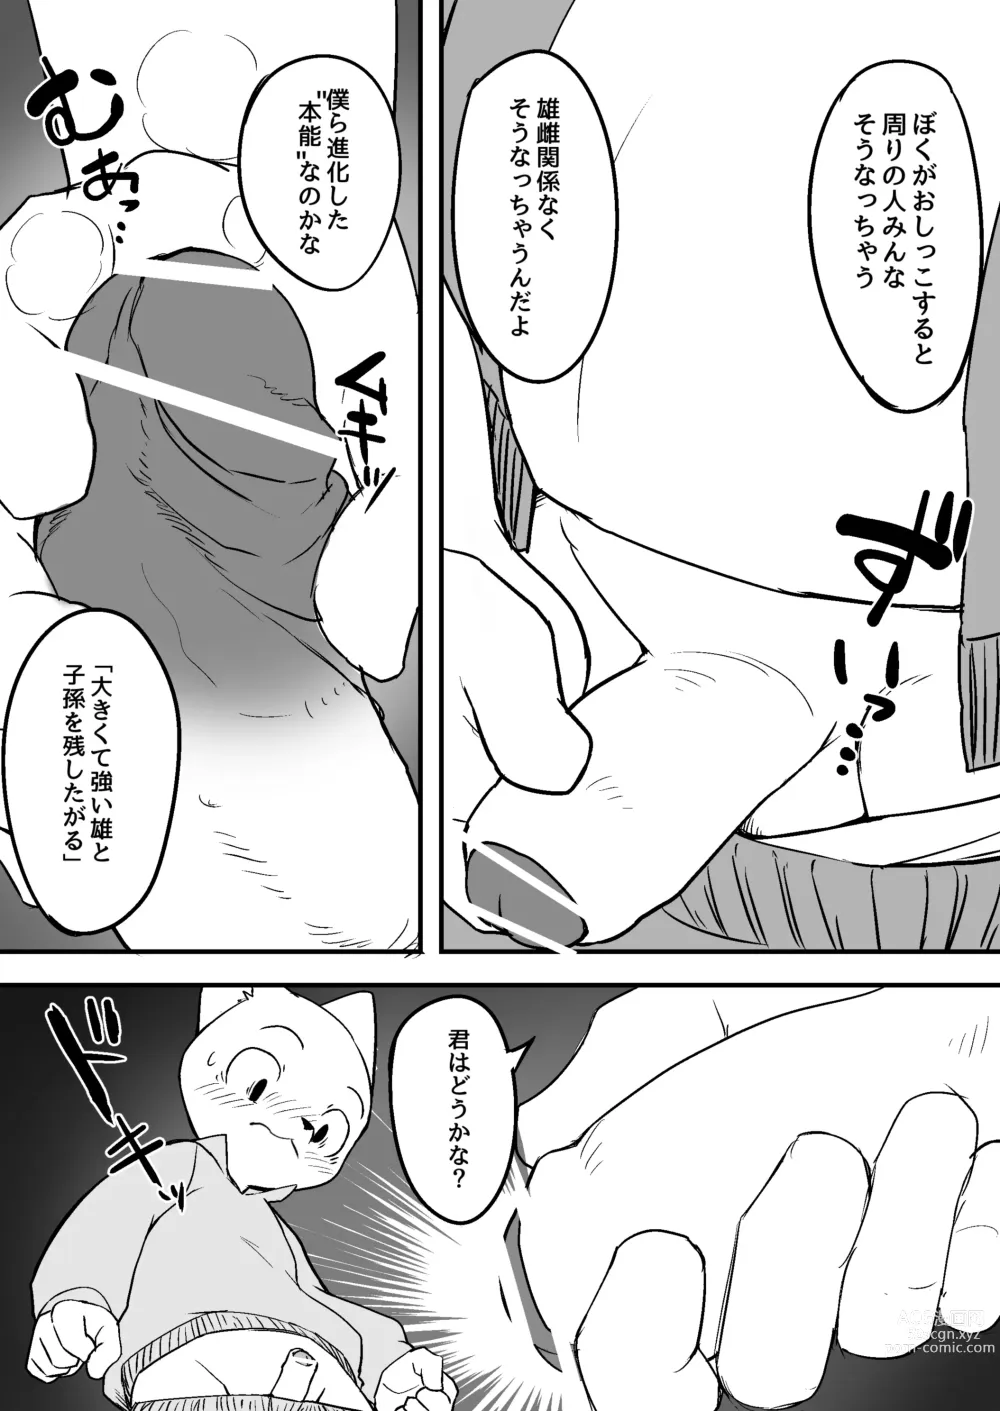 Page 3 of doujinshi Manmosu Marimo - Sensei Story #1